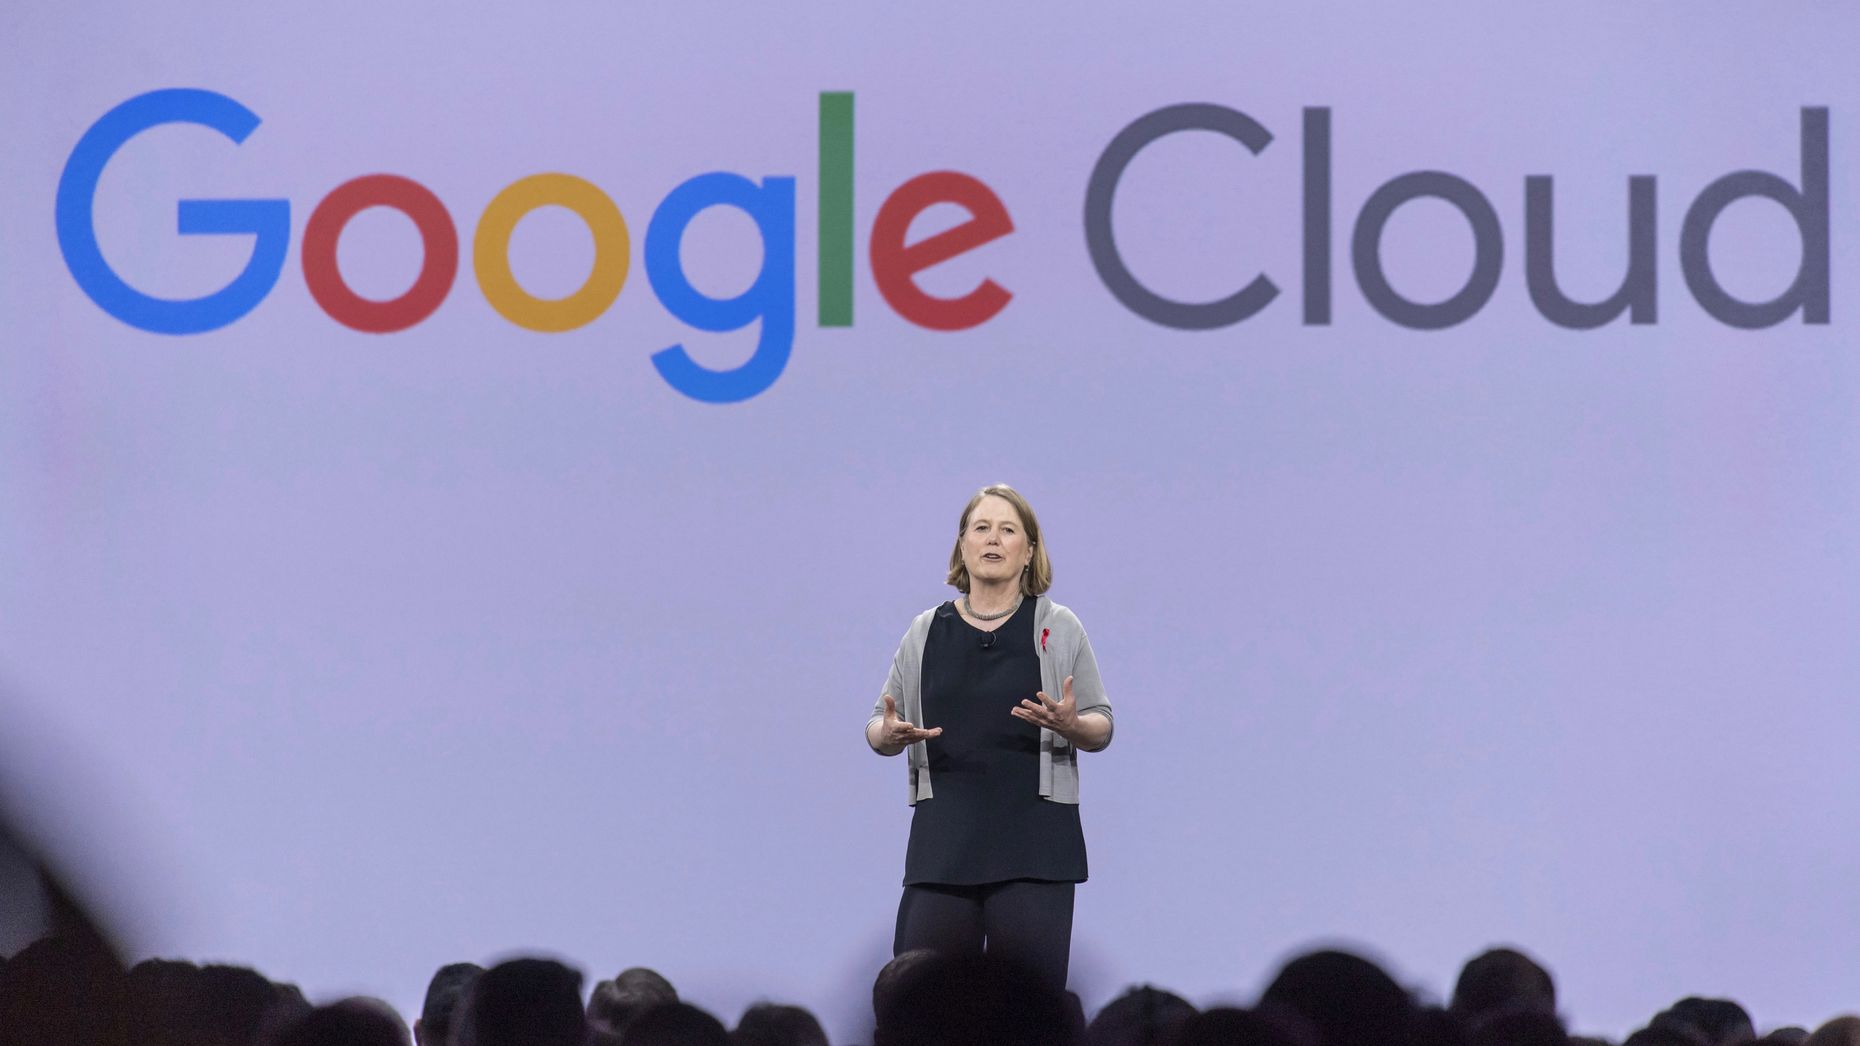 جوجل ترضخ لموظفيها عبر إلغاء تجديد عقد Project Maven